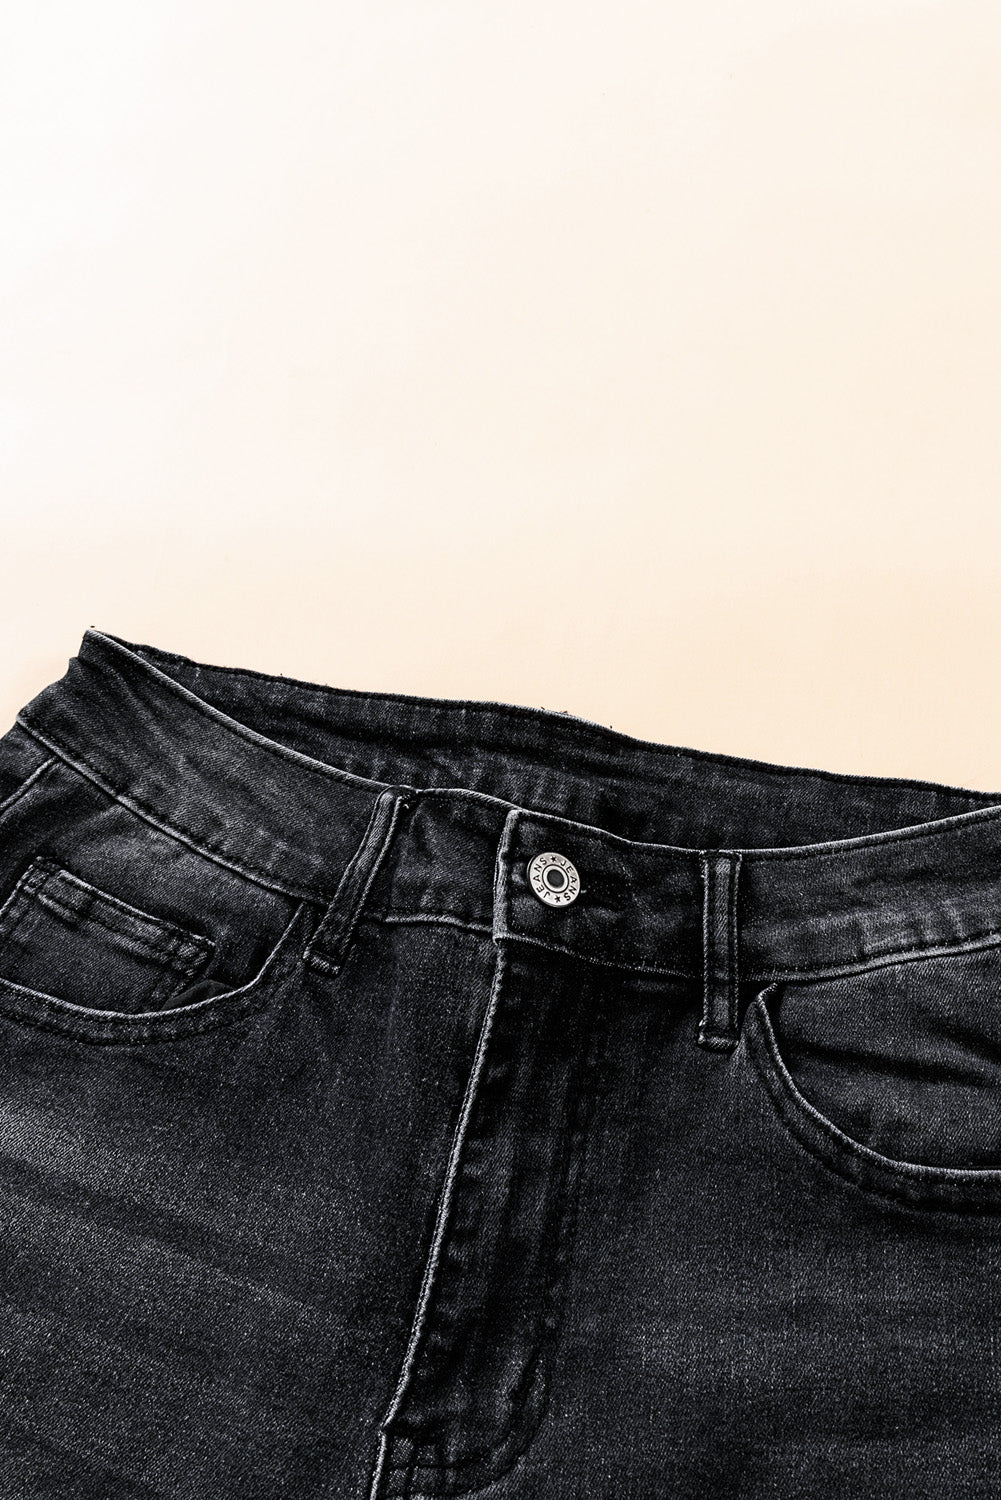 Jeans neri a vita media con bottoni e orlo grezzo invecchiato